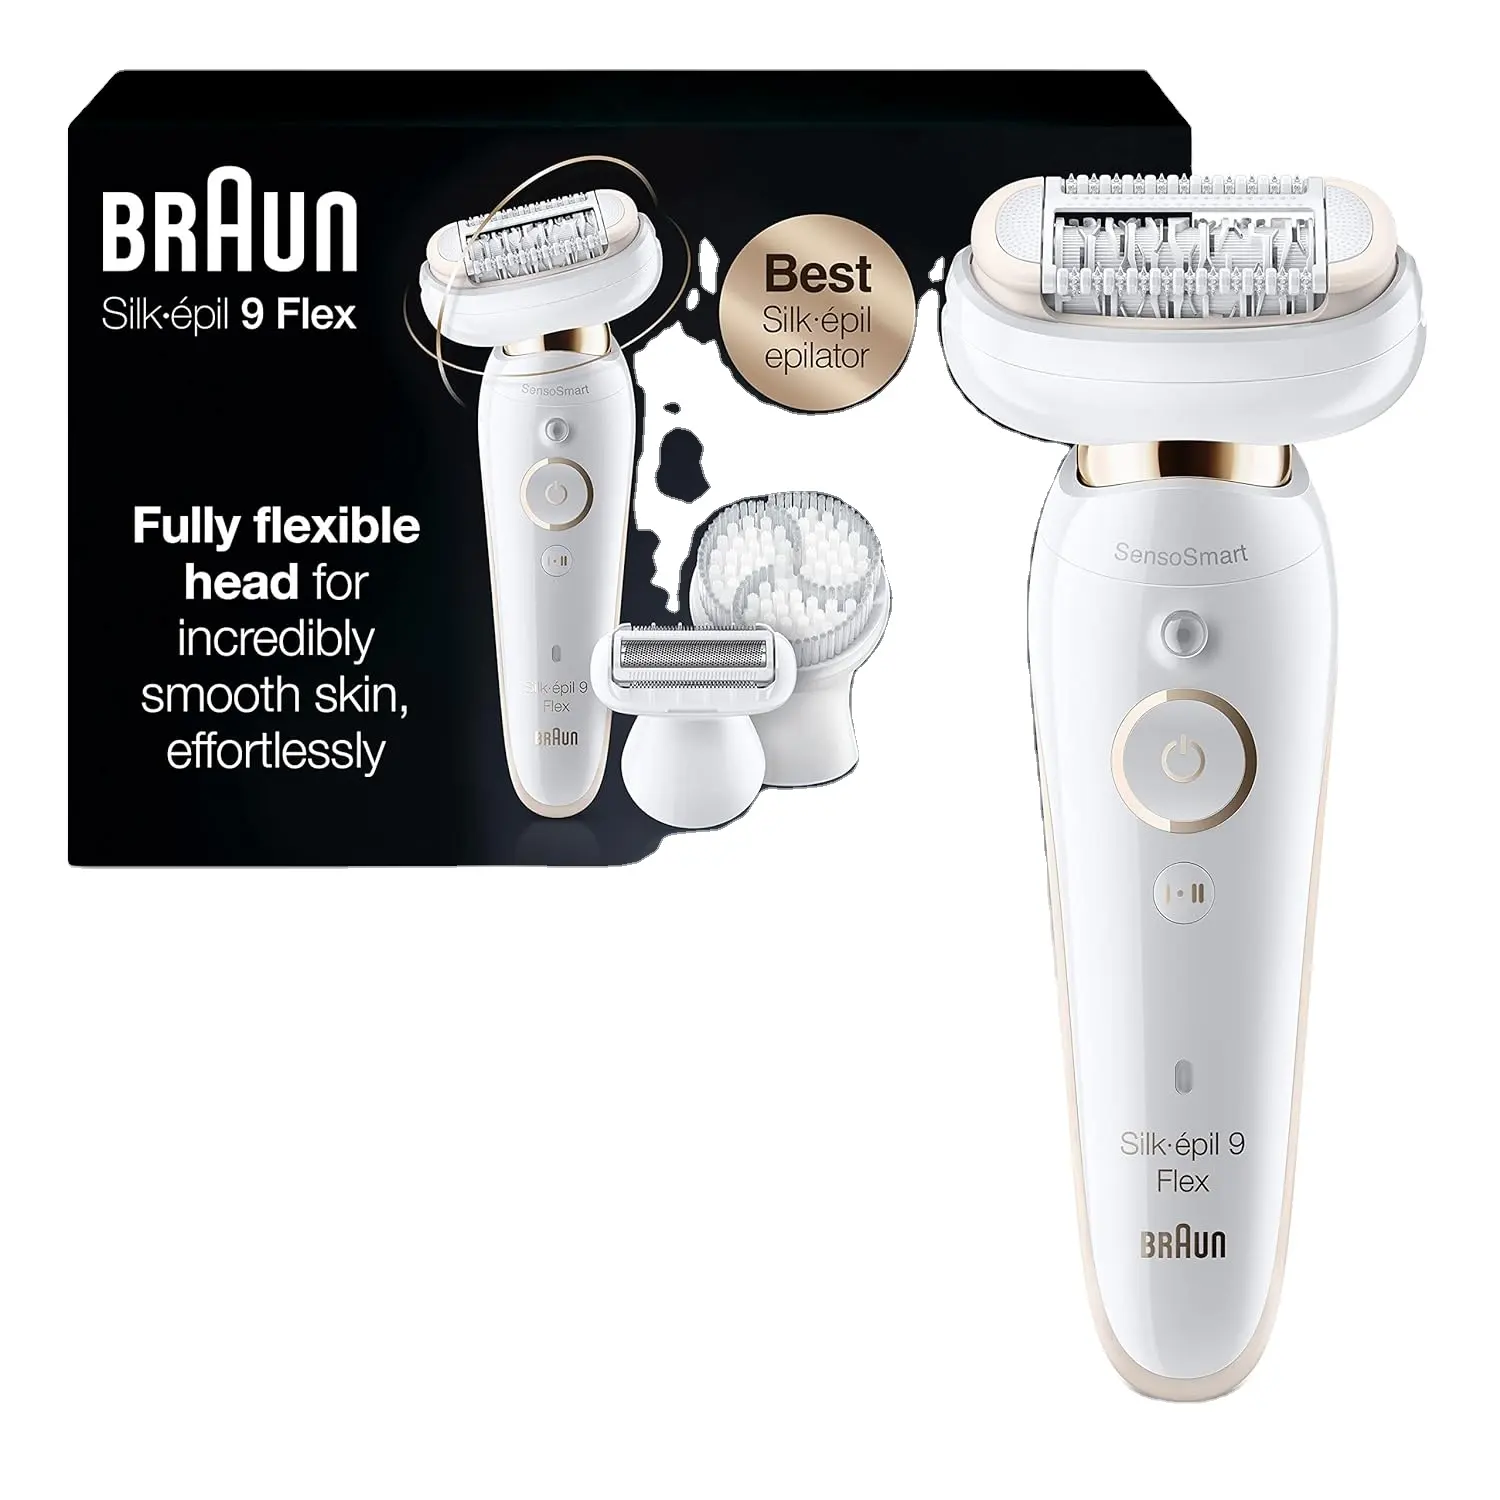 Braun آلة إزالة الشعر حرير-ابيل 9 9-030 مع رأس مرنة،إزالة شعر الوجه للرجال والنساء، جهاز إزالة الشعر حلاقة ومهذب